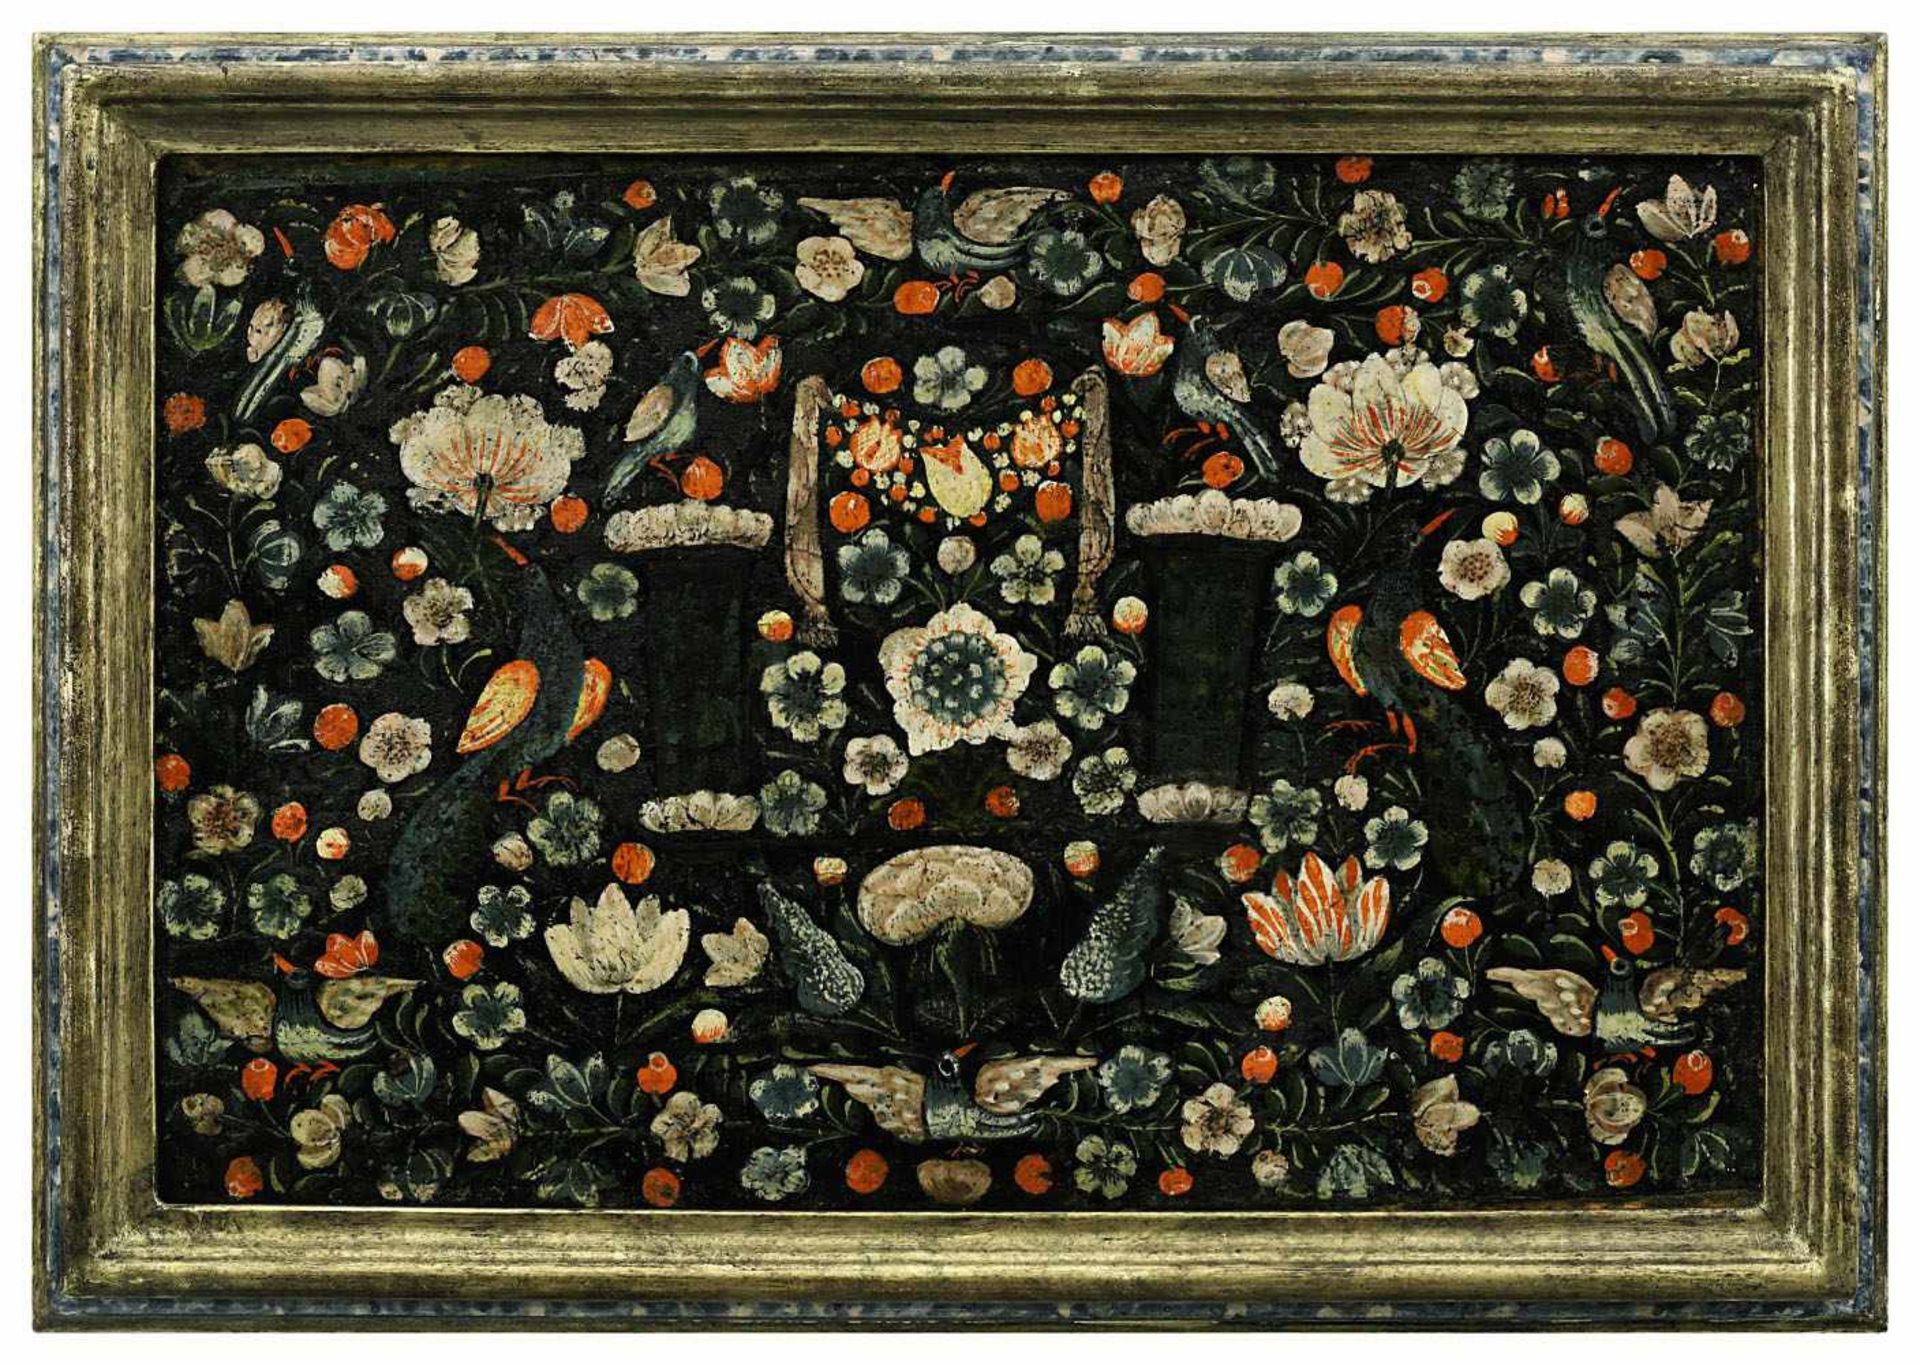 Florale MalereiSüddeutsch, wohl 17. Jh.Wohl ehemals Teil eines Hochzeitskästchens. Reic